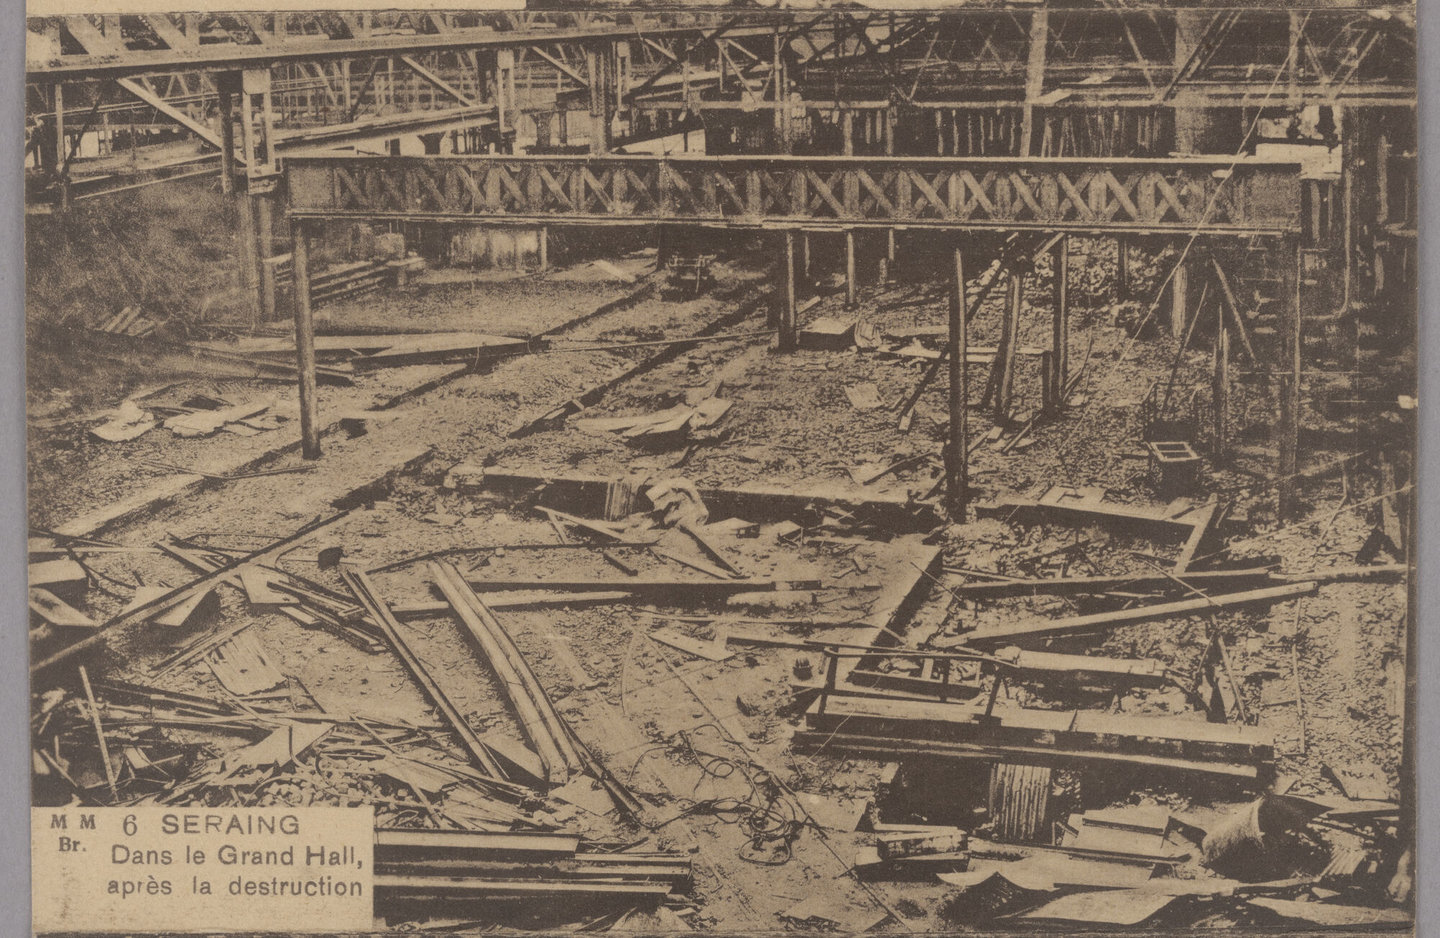 Zicht op de grote productiehal van staalfabriek Cockerill in Seraing na de vernietiging in de Eerste Wereldoorlog